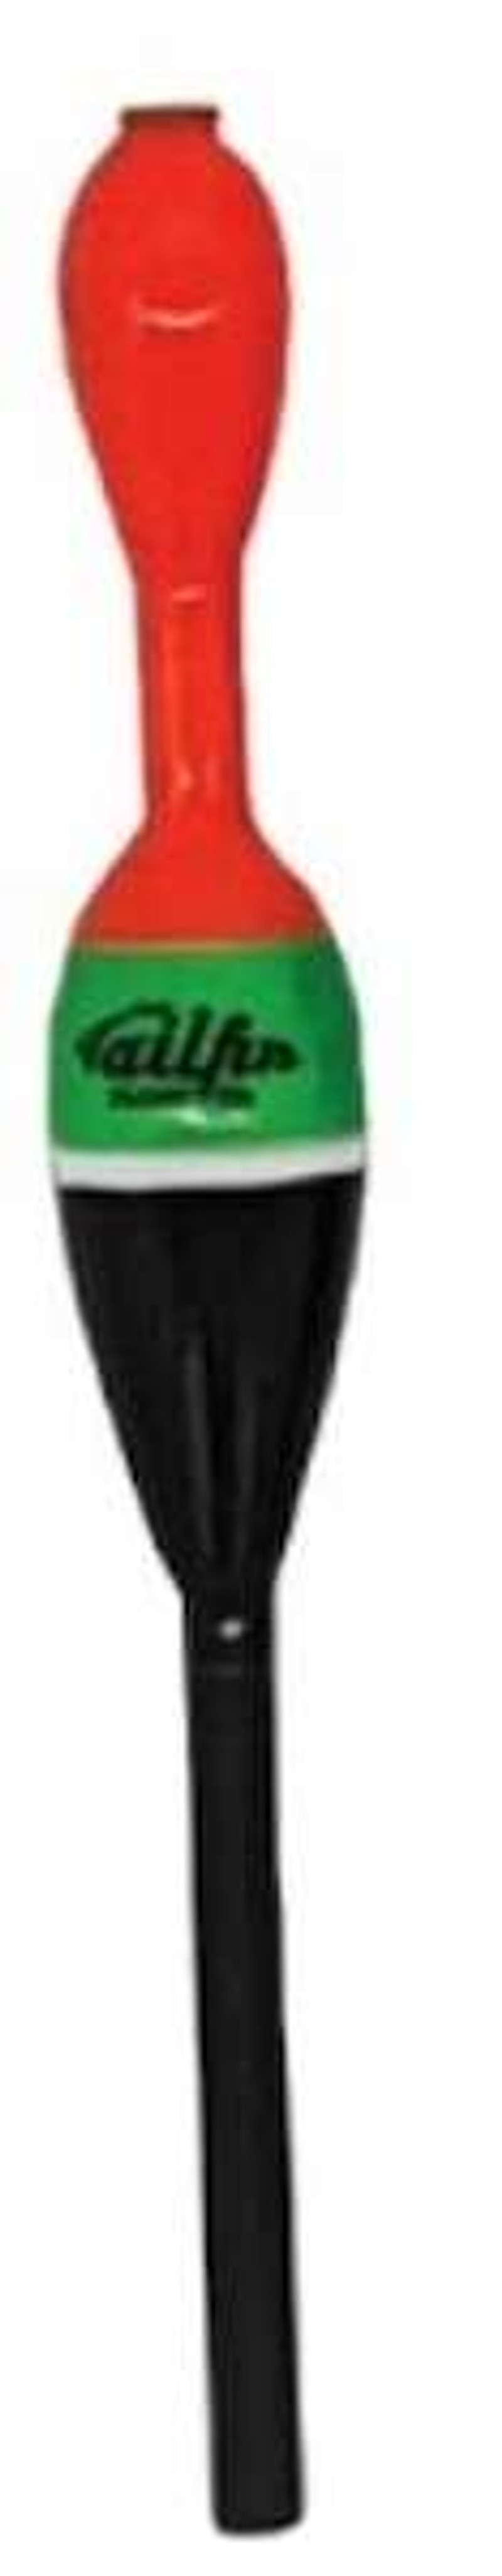 Tailfin Premium Float 3/4 in.